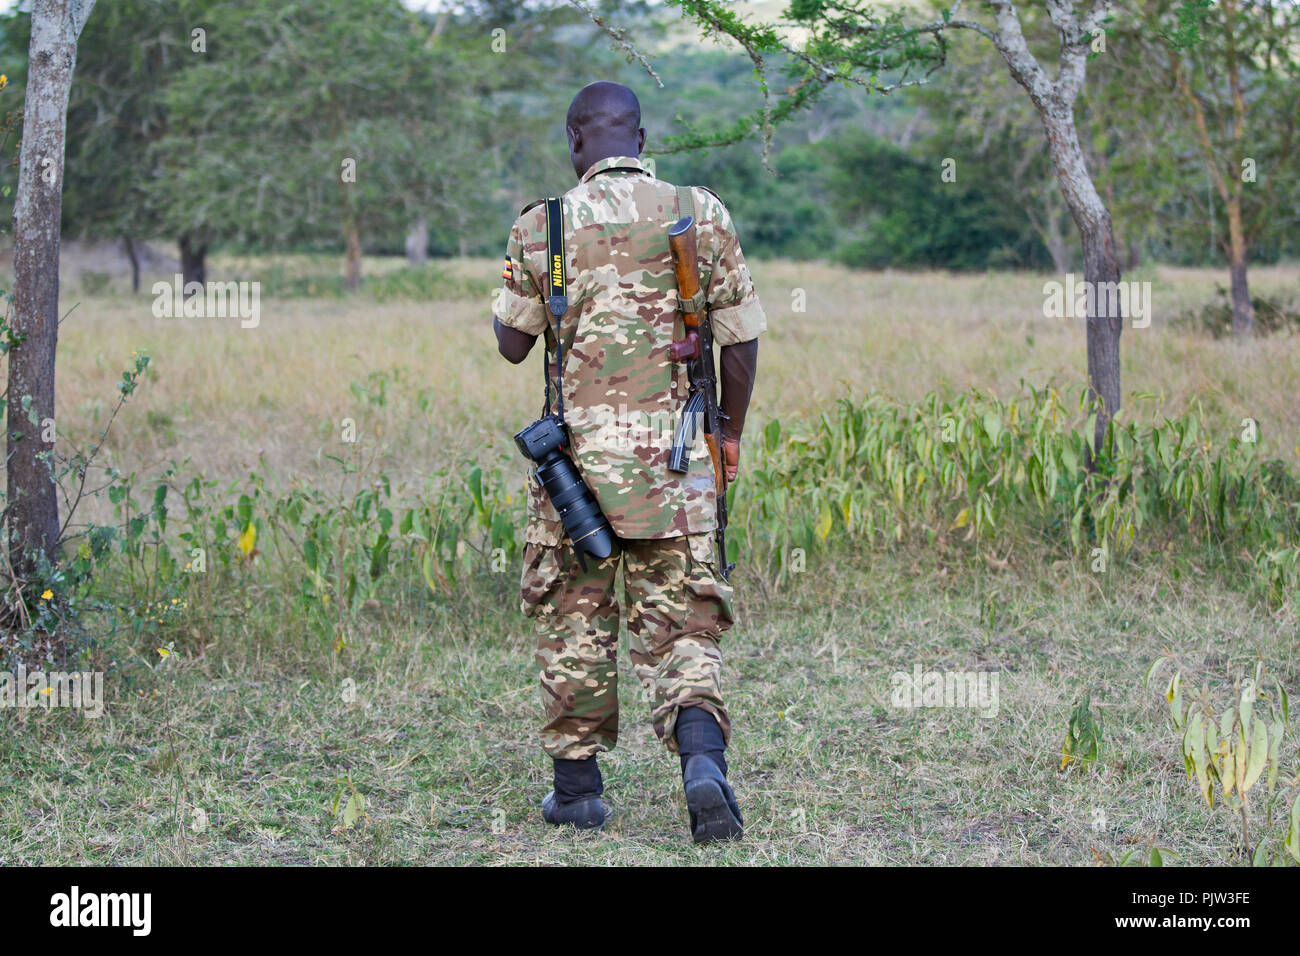 Ranger, garde-chasse, Field Guide, Guide de Safari avec fusil AK-42, parc national du lac Mburo, Ouganda Banque D'Images